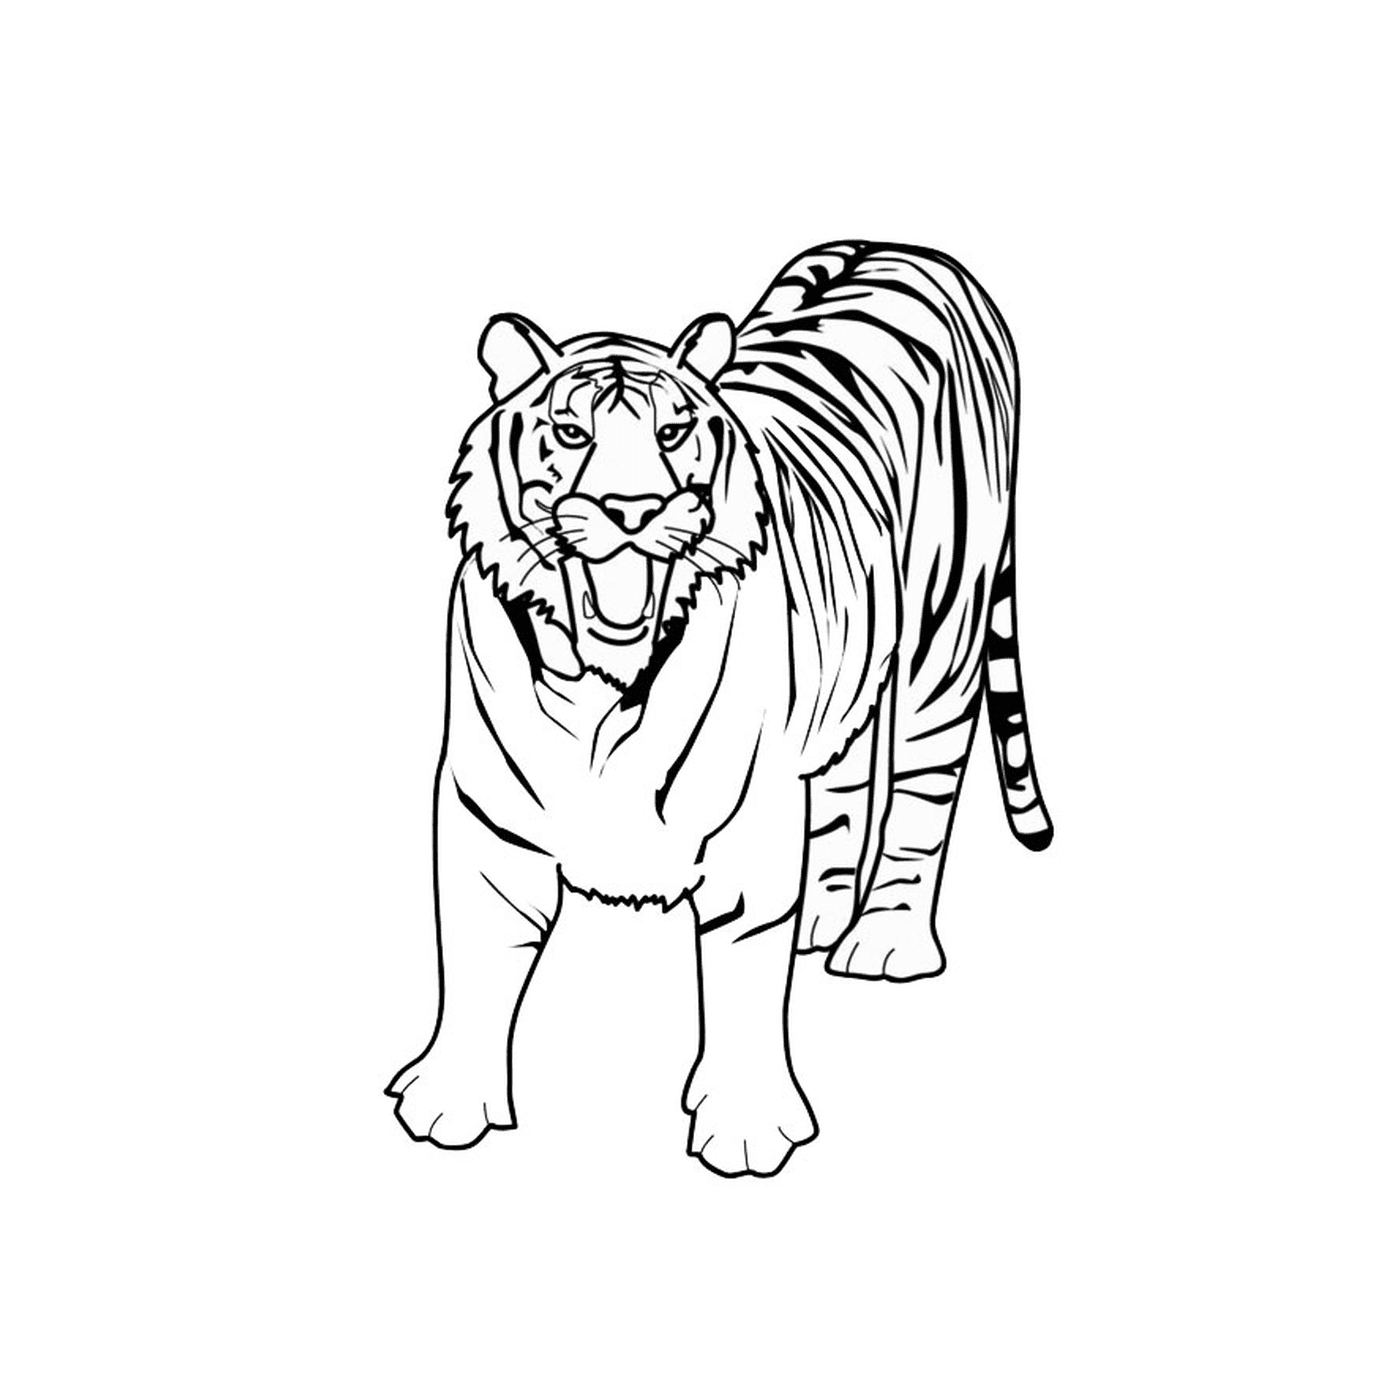  एक बाघ 